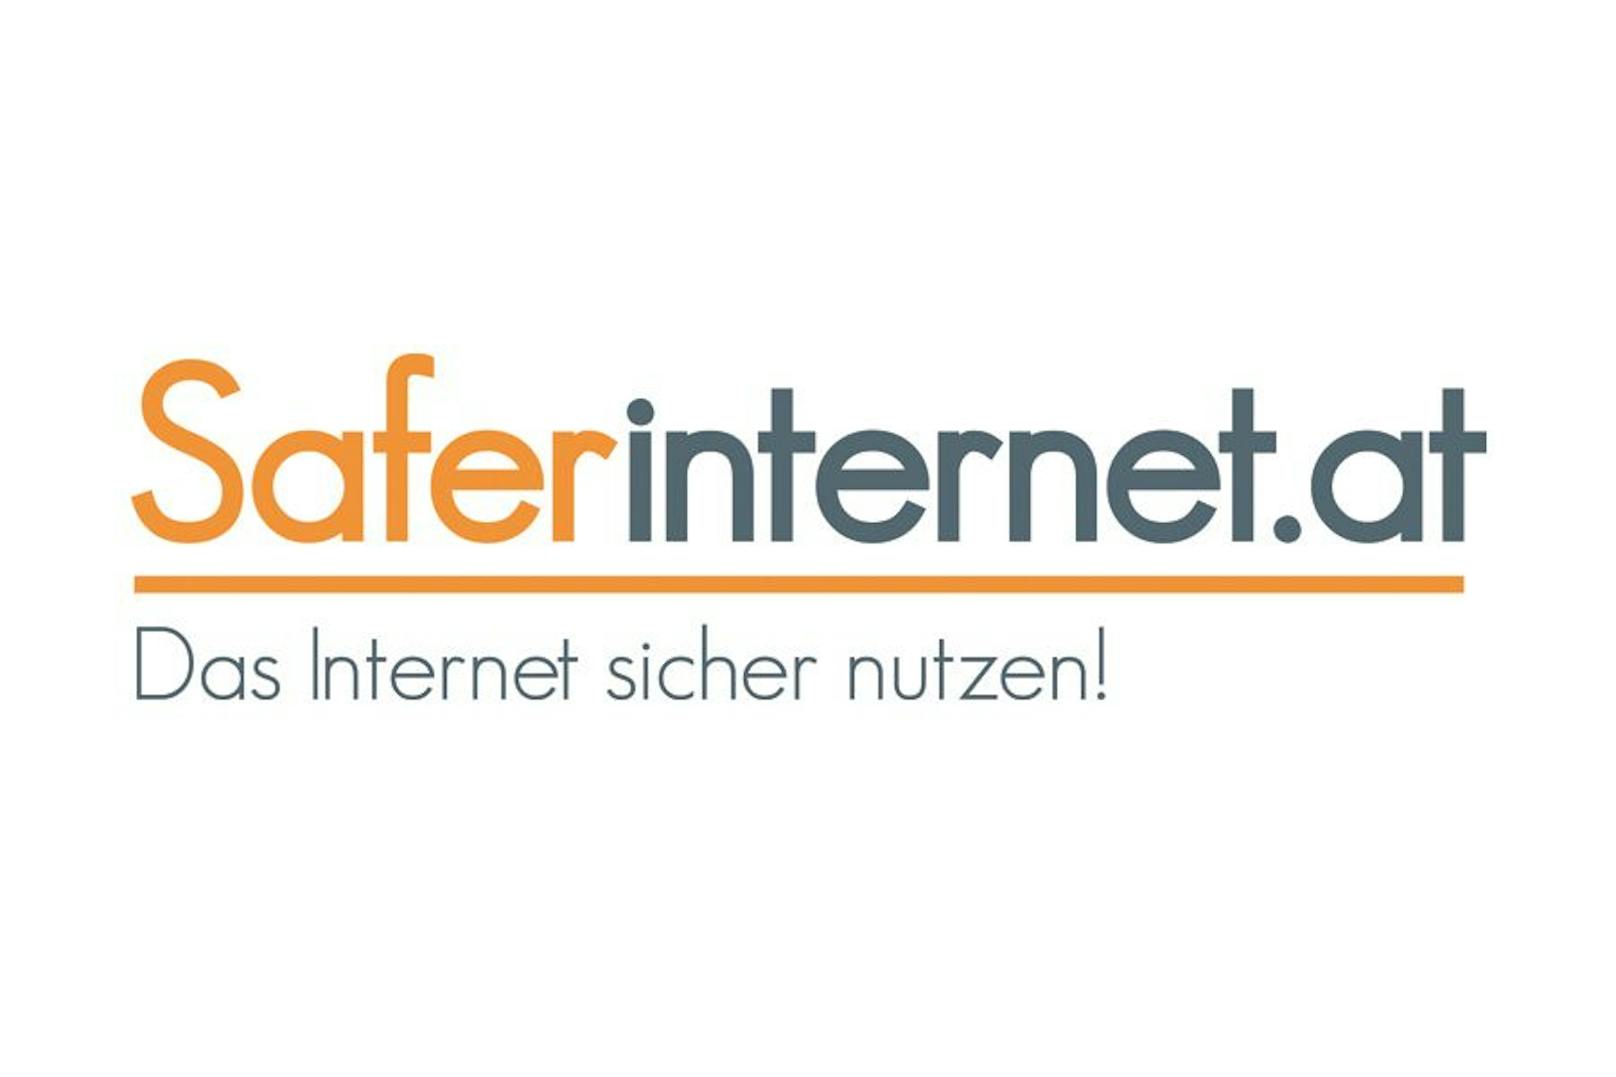 Nicht nur zum Safer Internet Day, sondern das ganze Jahr über bietet Saferinternet.at ein umfassendes Informationsangebot für Kinder, Jugendliche, Eltern und Lehrende. 